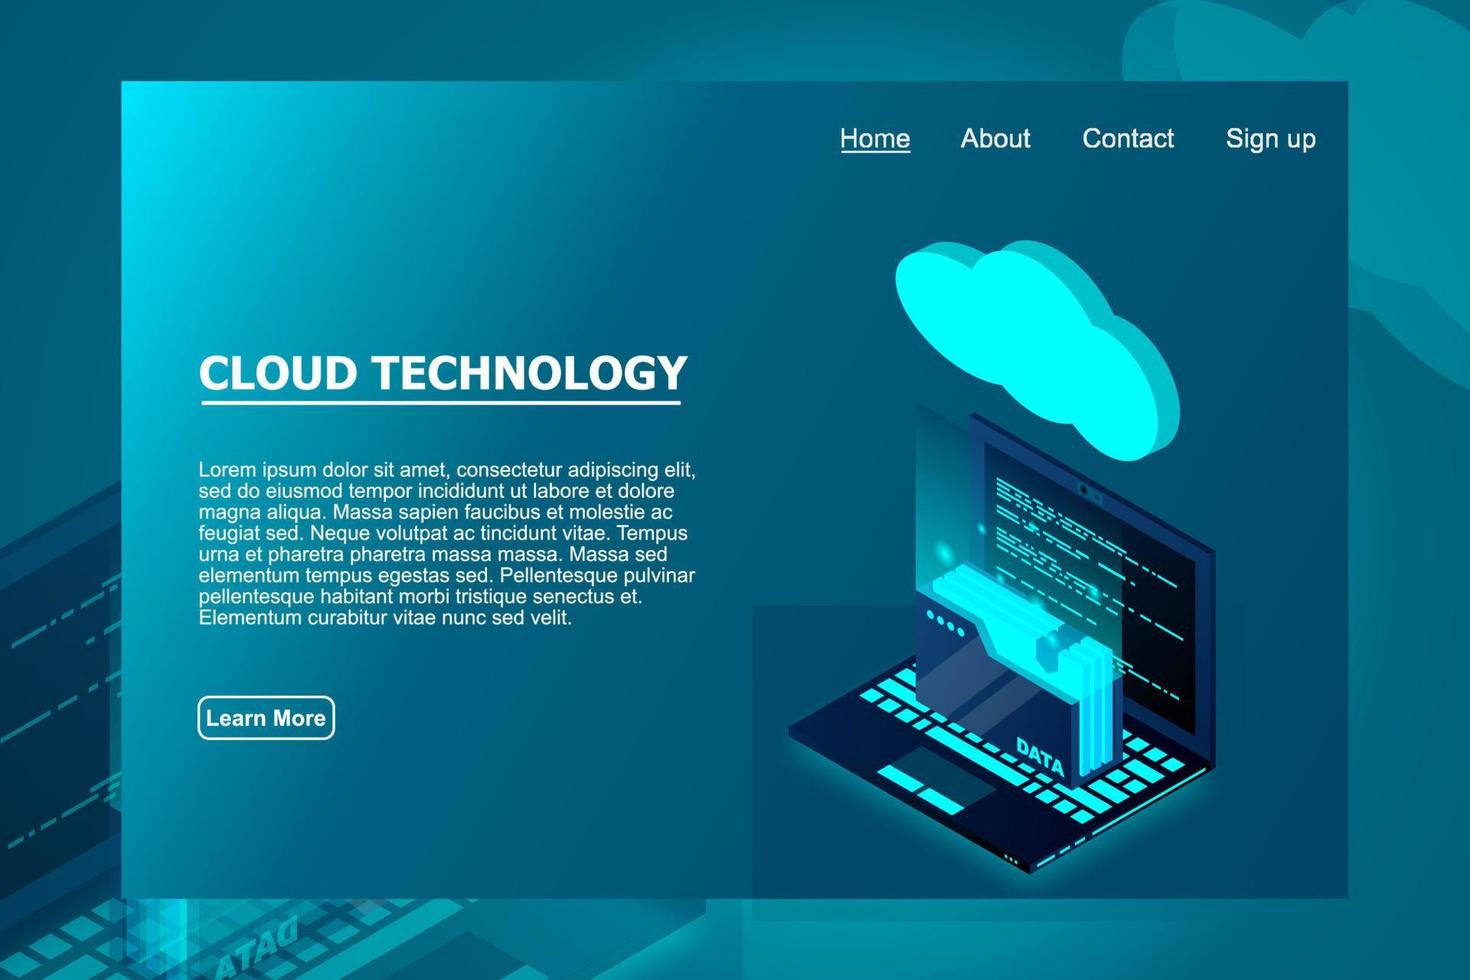 isometrische Cloud-Technologie mit Ordnerdaten und Laptop. Cloud-Technologie-Computing-Konzept. Vektor-Illustration vektor